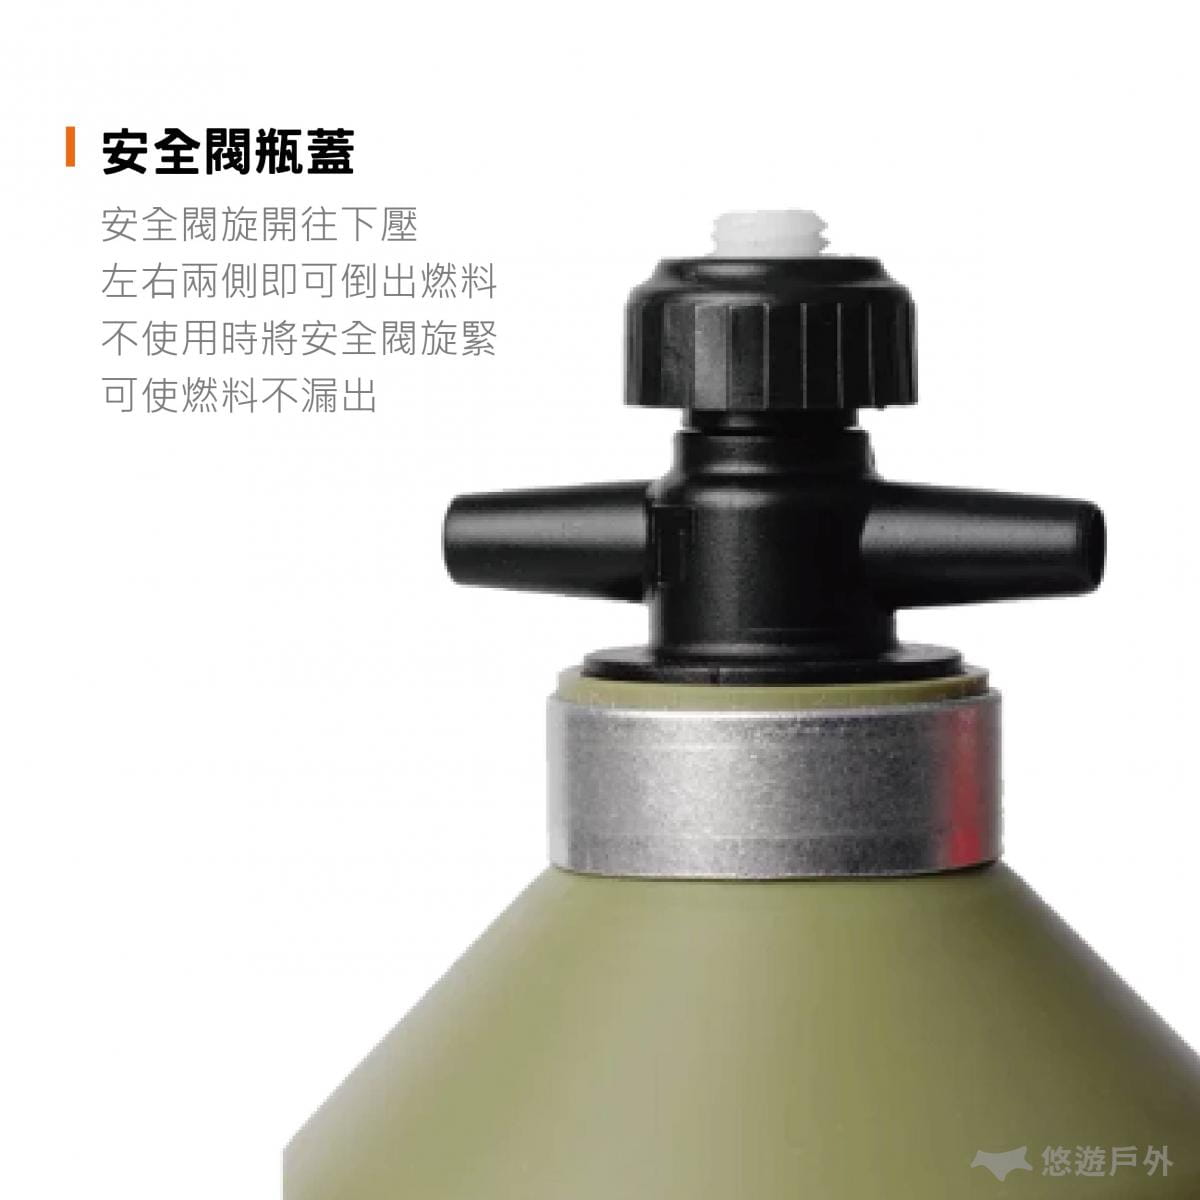 燃料瓶 油瓶【公司貨】Trangia Fuel Bottle (經典紅_0.3L) 悠遊戶外 1